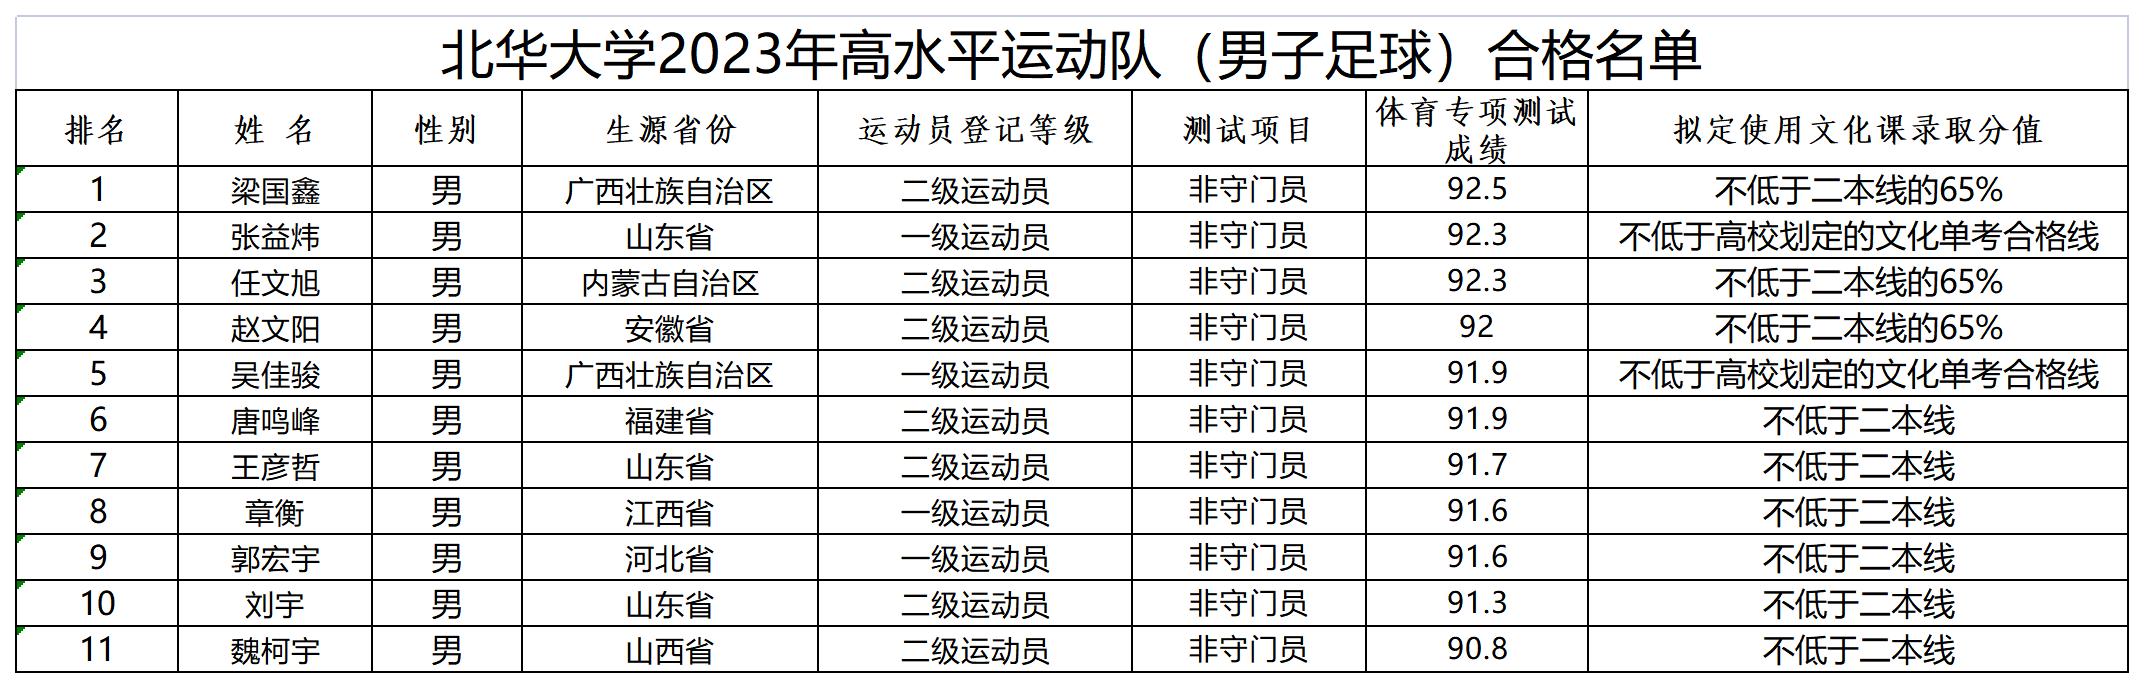 北华大学2023年高水平运动队（男子足球）合格名单_Sheet1.jpg